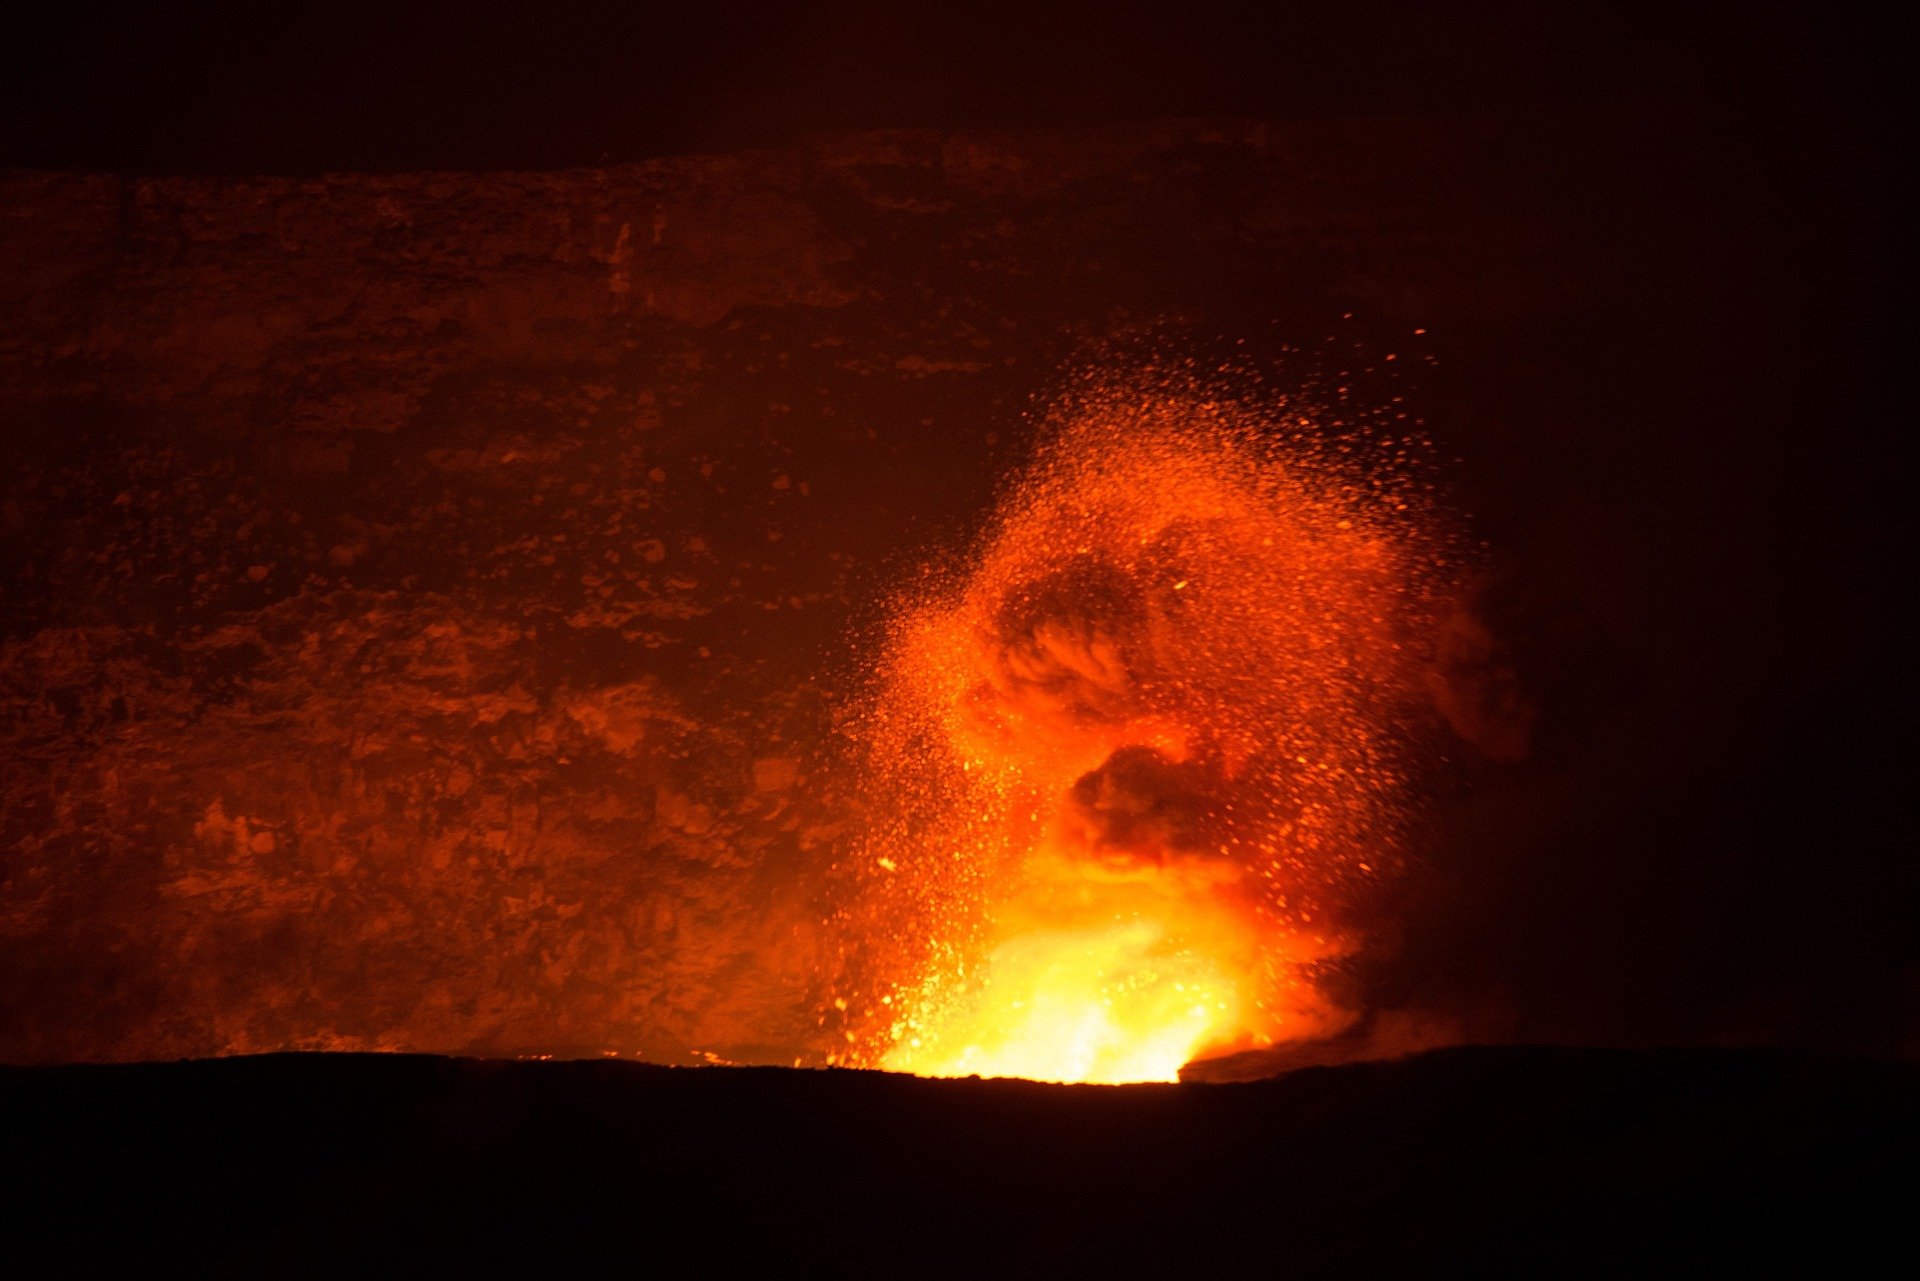 Volcán en erupción. | Imagen: Pixabay